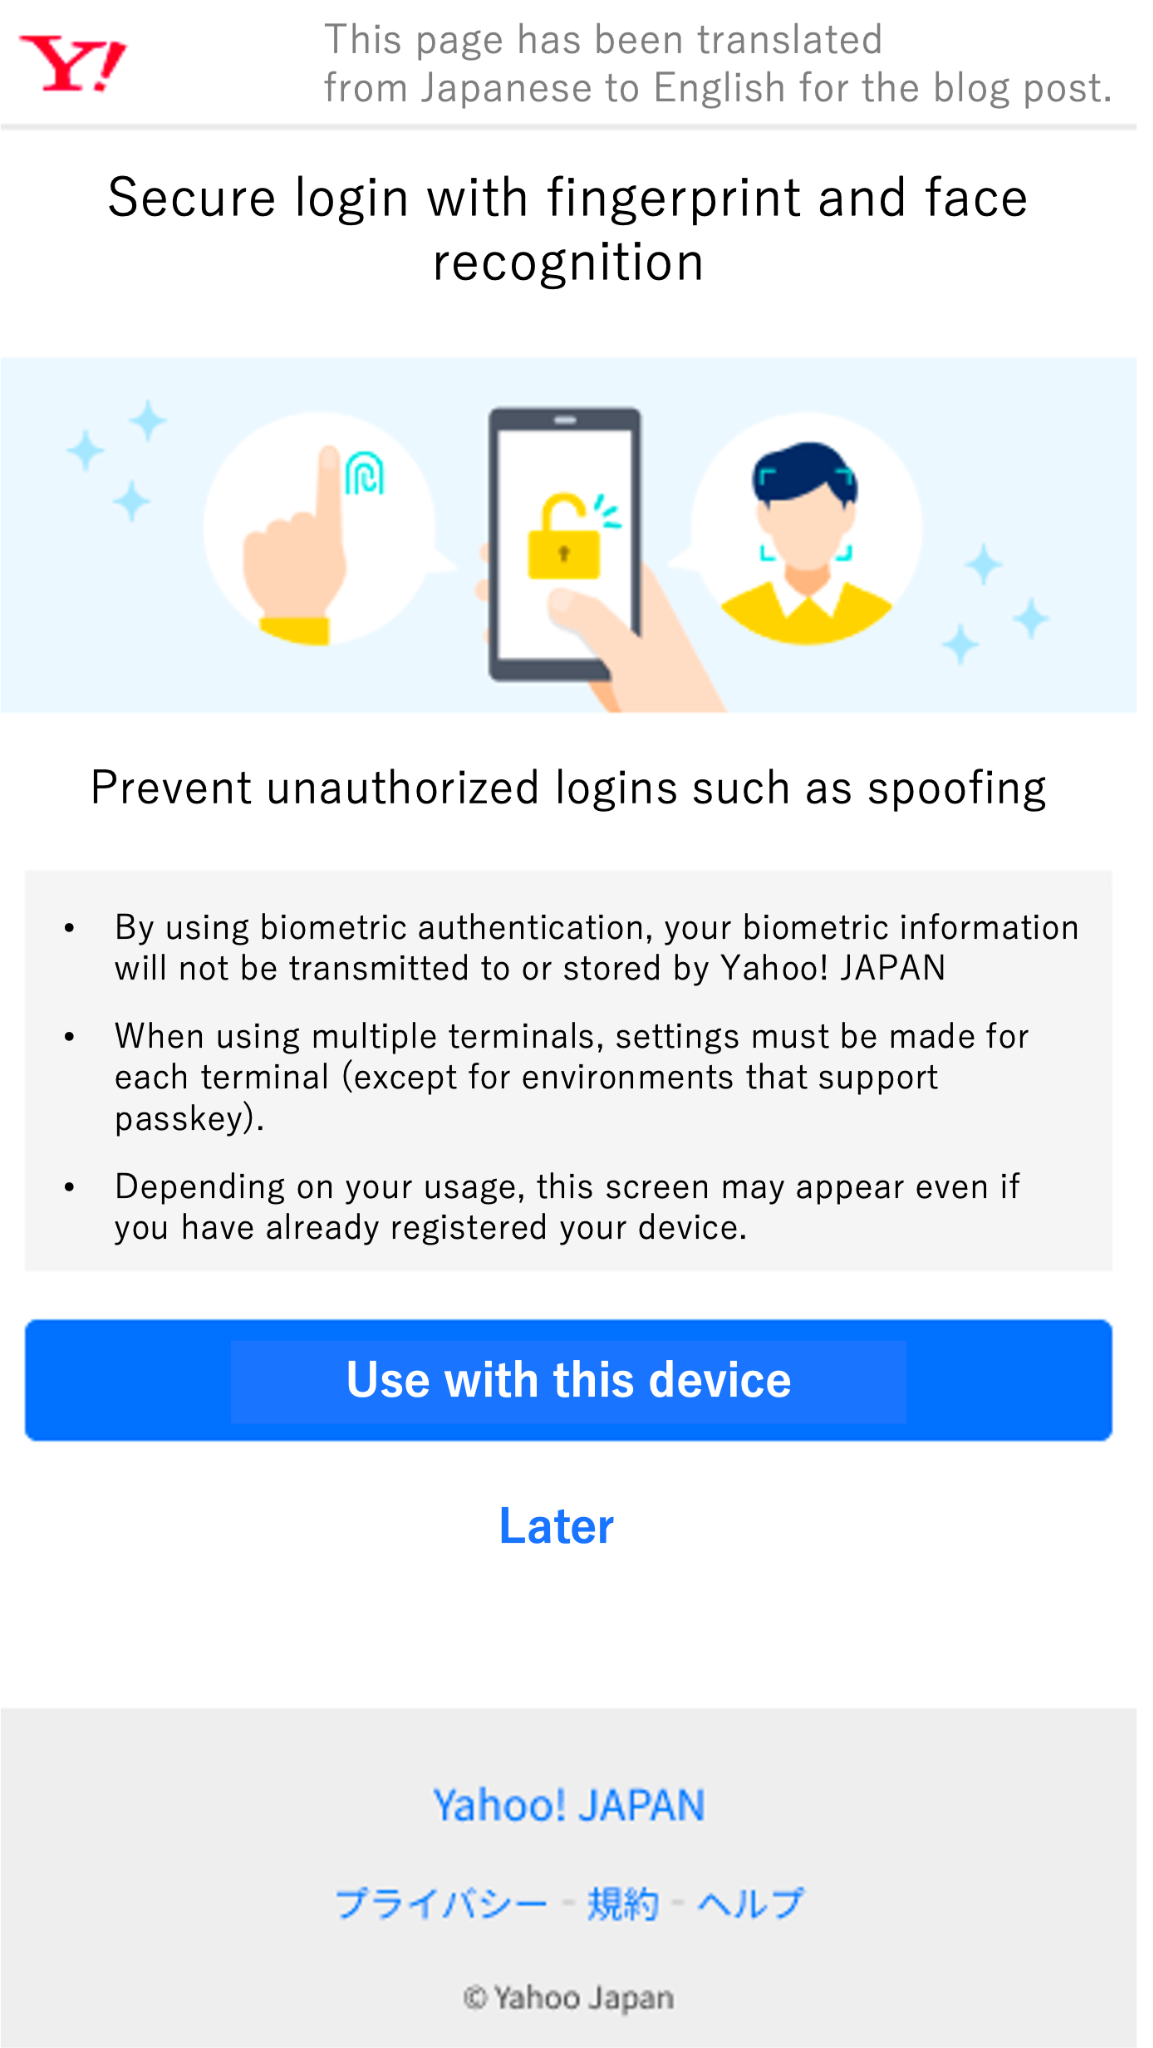 Traducción al inglés de la interfaz de Yahoo! Página de registro de la llave de acceso de JAPAN en iOS (grupo de control).